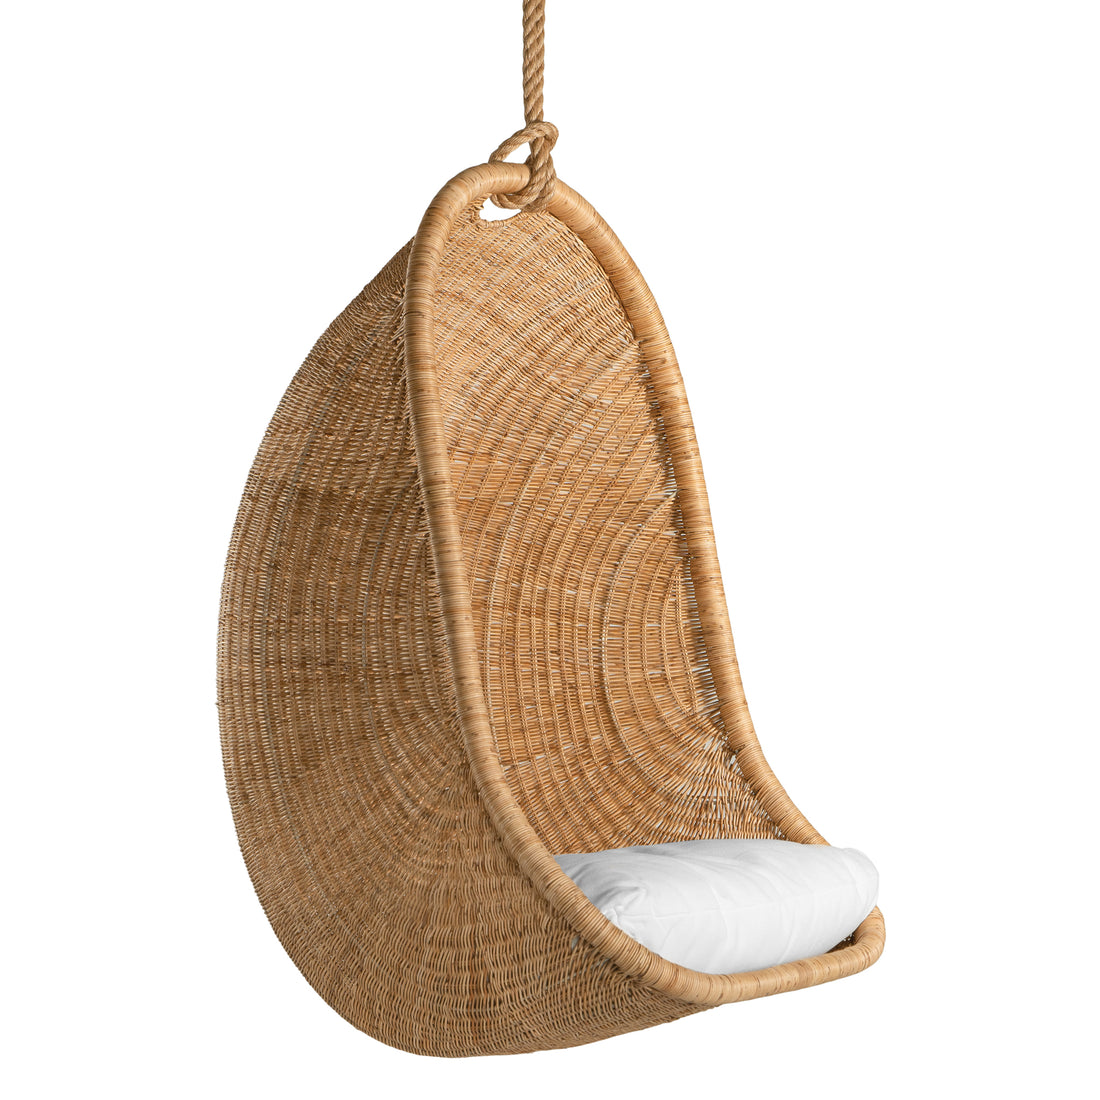 Makenge Hanging Chair